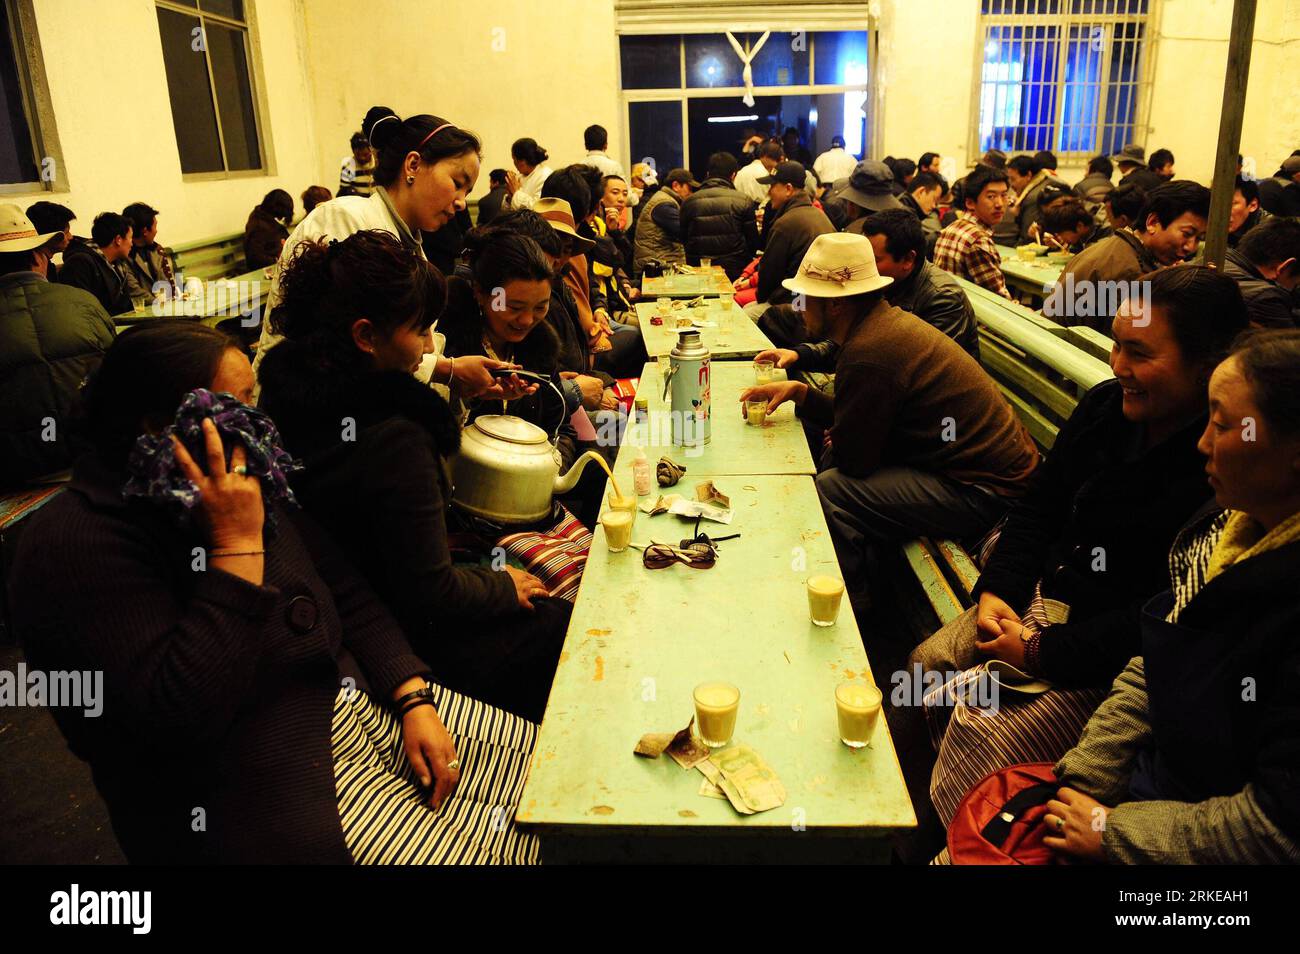 Bildnummer: 55178930 Datum: 31.03.2011 Copyright: imago/Xinhua (110331) -- LHASA, 31. März 2011 Xinhua) -- Tibetische sitzen, um süßen Tee zu trinken, während eine Kellnerin eine Tasse Tee in einem Teehaus in Lhasa, der autonomen Region Tibet im Südwesten Chinas, füllt, 31. März 2011. Als Teil der tibetischen Kultur war der süße Tee in einem Teehaus für viele Einheimische ein unverzichtbarer Lebensstil. Tibetischer Süßtee, der aus dem britischen Schwarztee stammt, wird erstmals im 19. Jahrhundert von den Engländern nach Tibet gebracht. Der traditionelle tibetische Süßtee enthält nur Milch, schwarzen Tee und Zucker. (Xinhua/Jiang Hongjing) (lfj Stockfoto